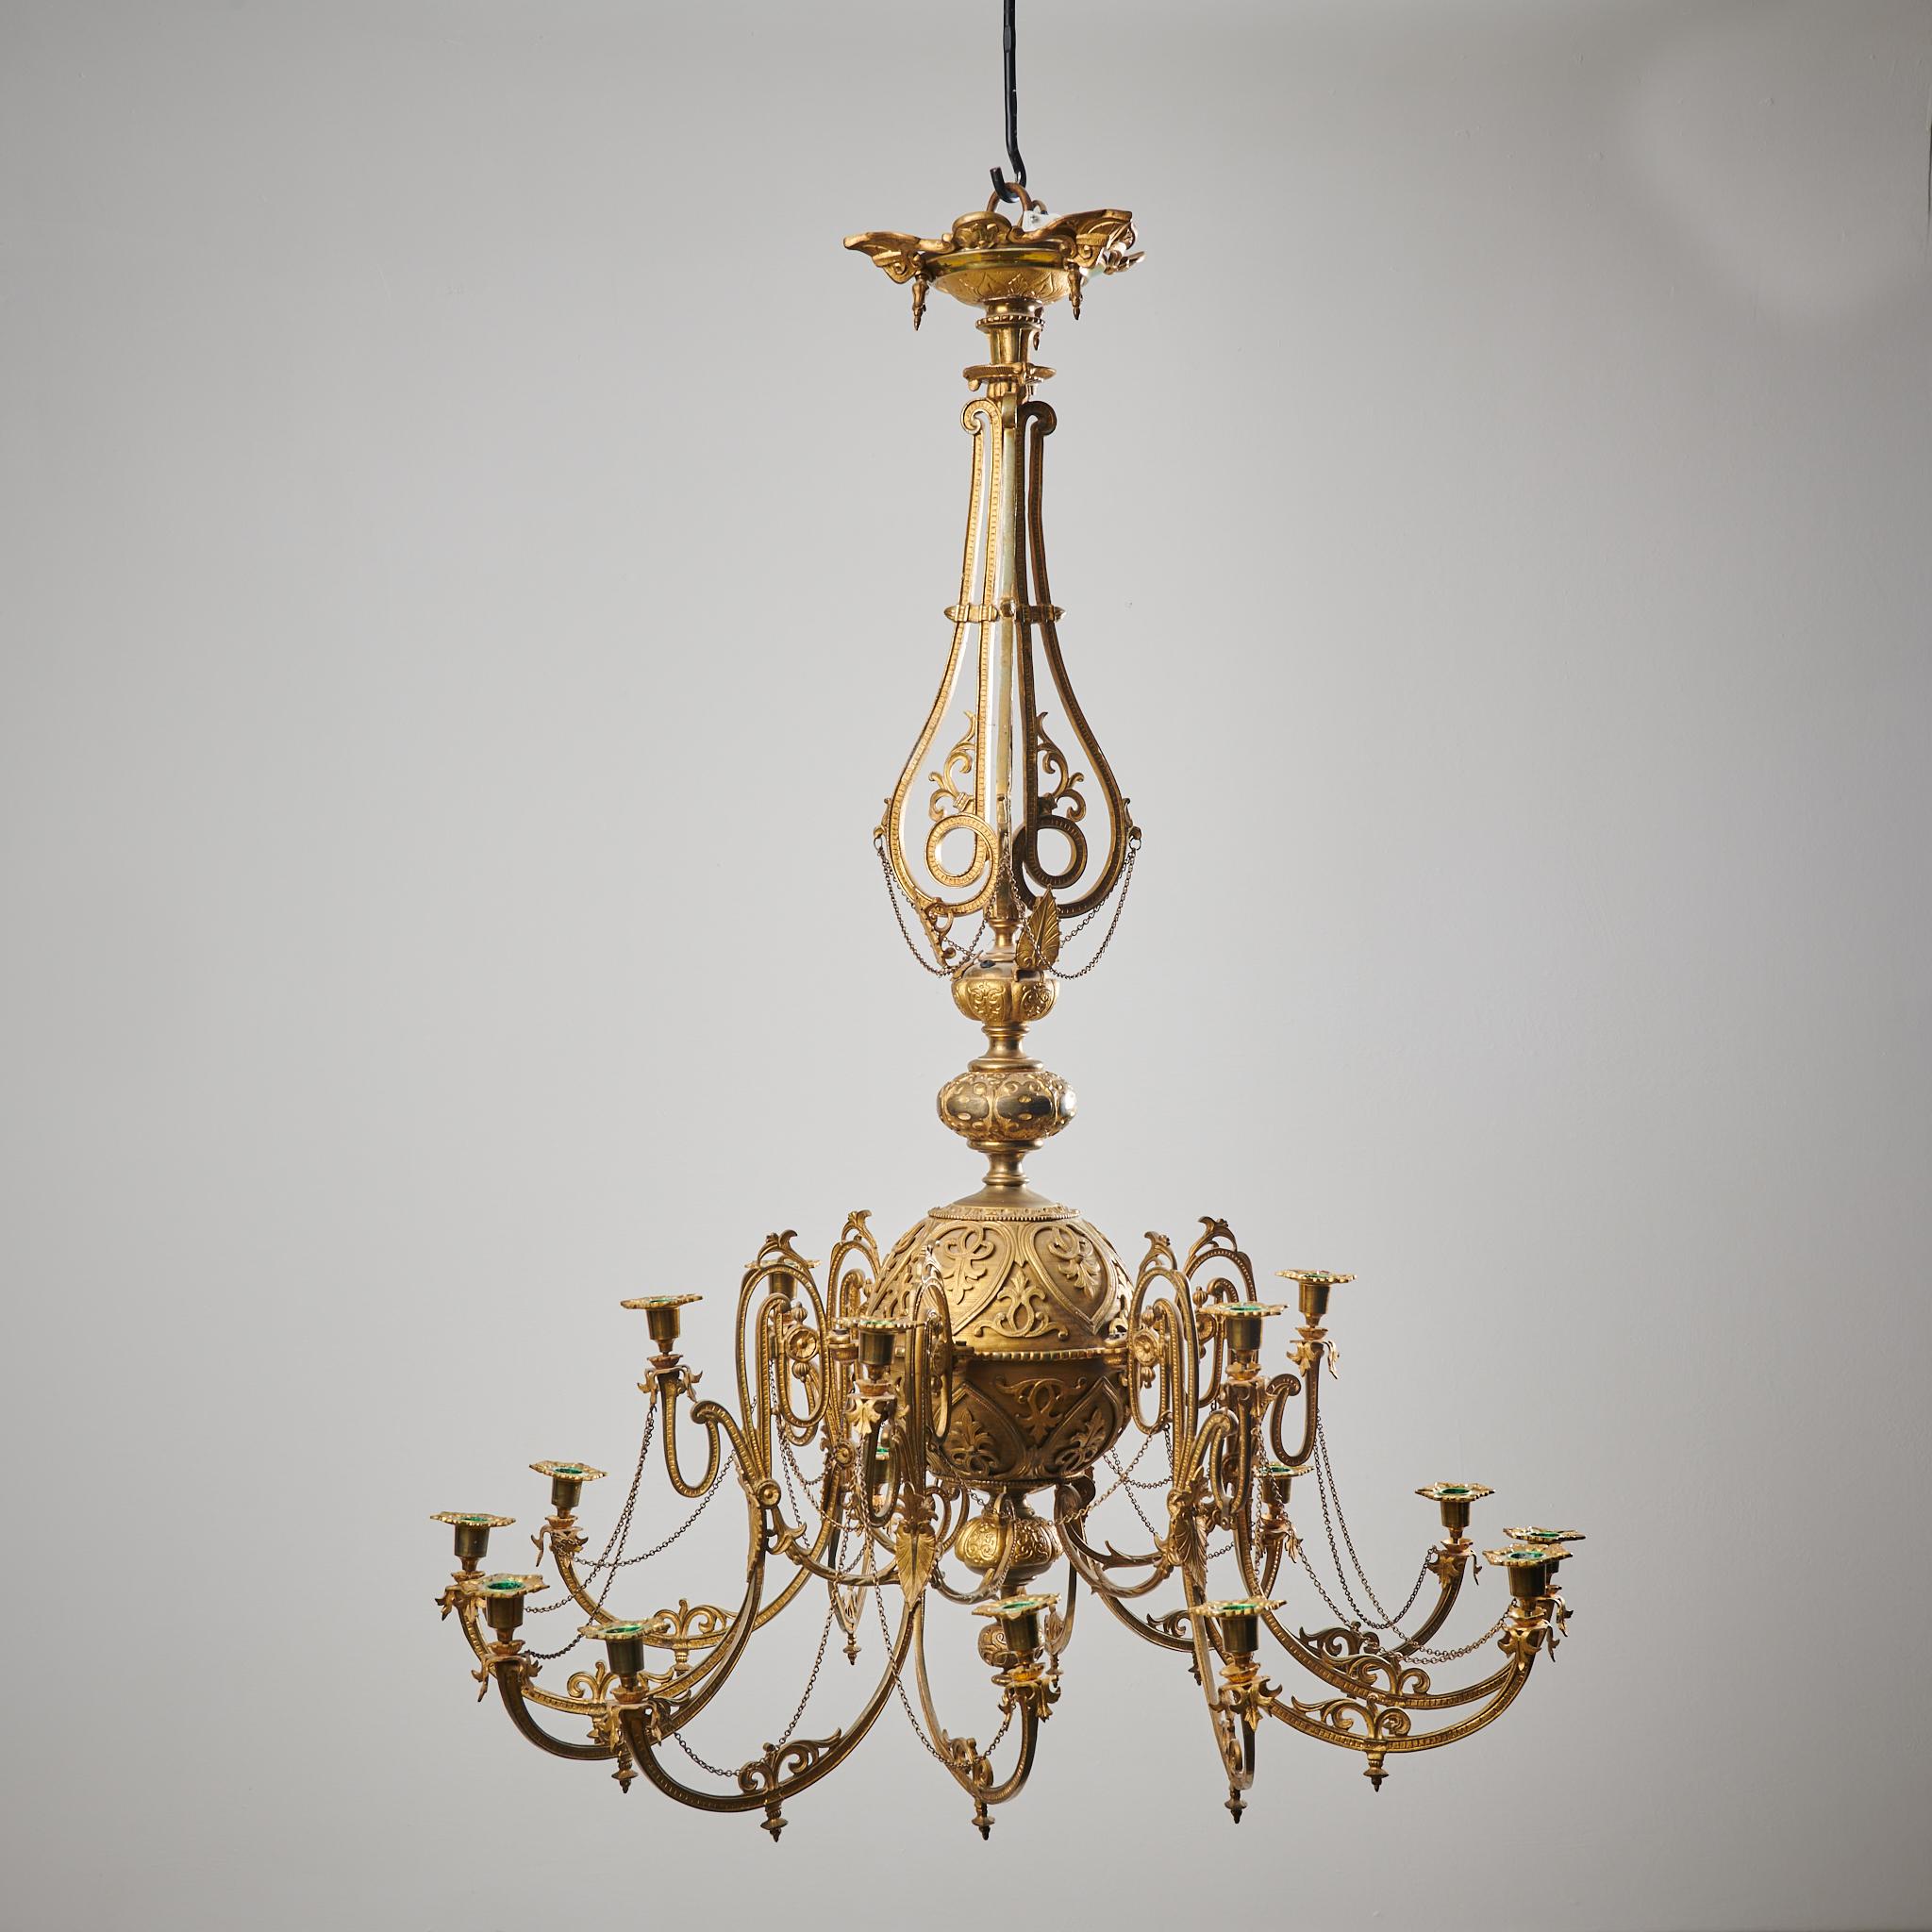 Antiker schwedischer bronzierter Kronleuchter aus der Mitte des 19. Jahrhunderts, etwa 1850 bis 1860. Der Kronleuchter besteht aus bronziertem Metall mit einem reich verzierten runden Rahmen. Er hat geschwungene Arme und ein kompliziertes Dekor in